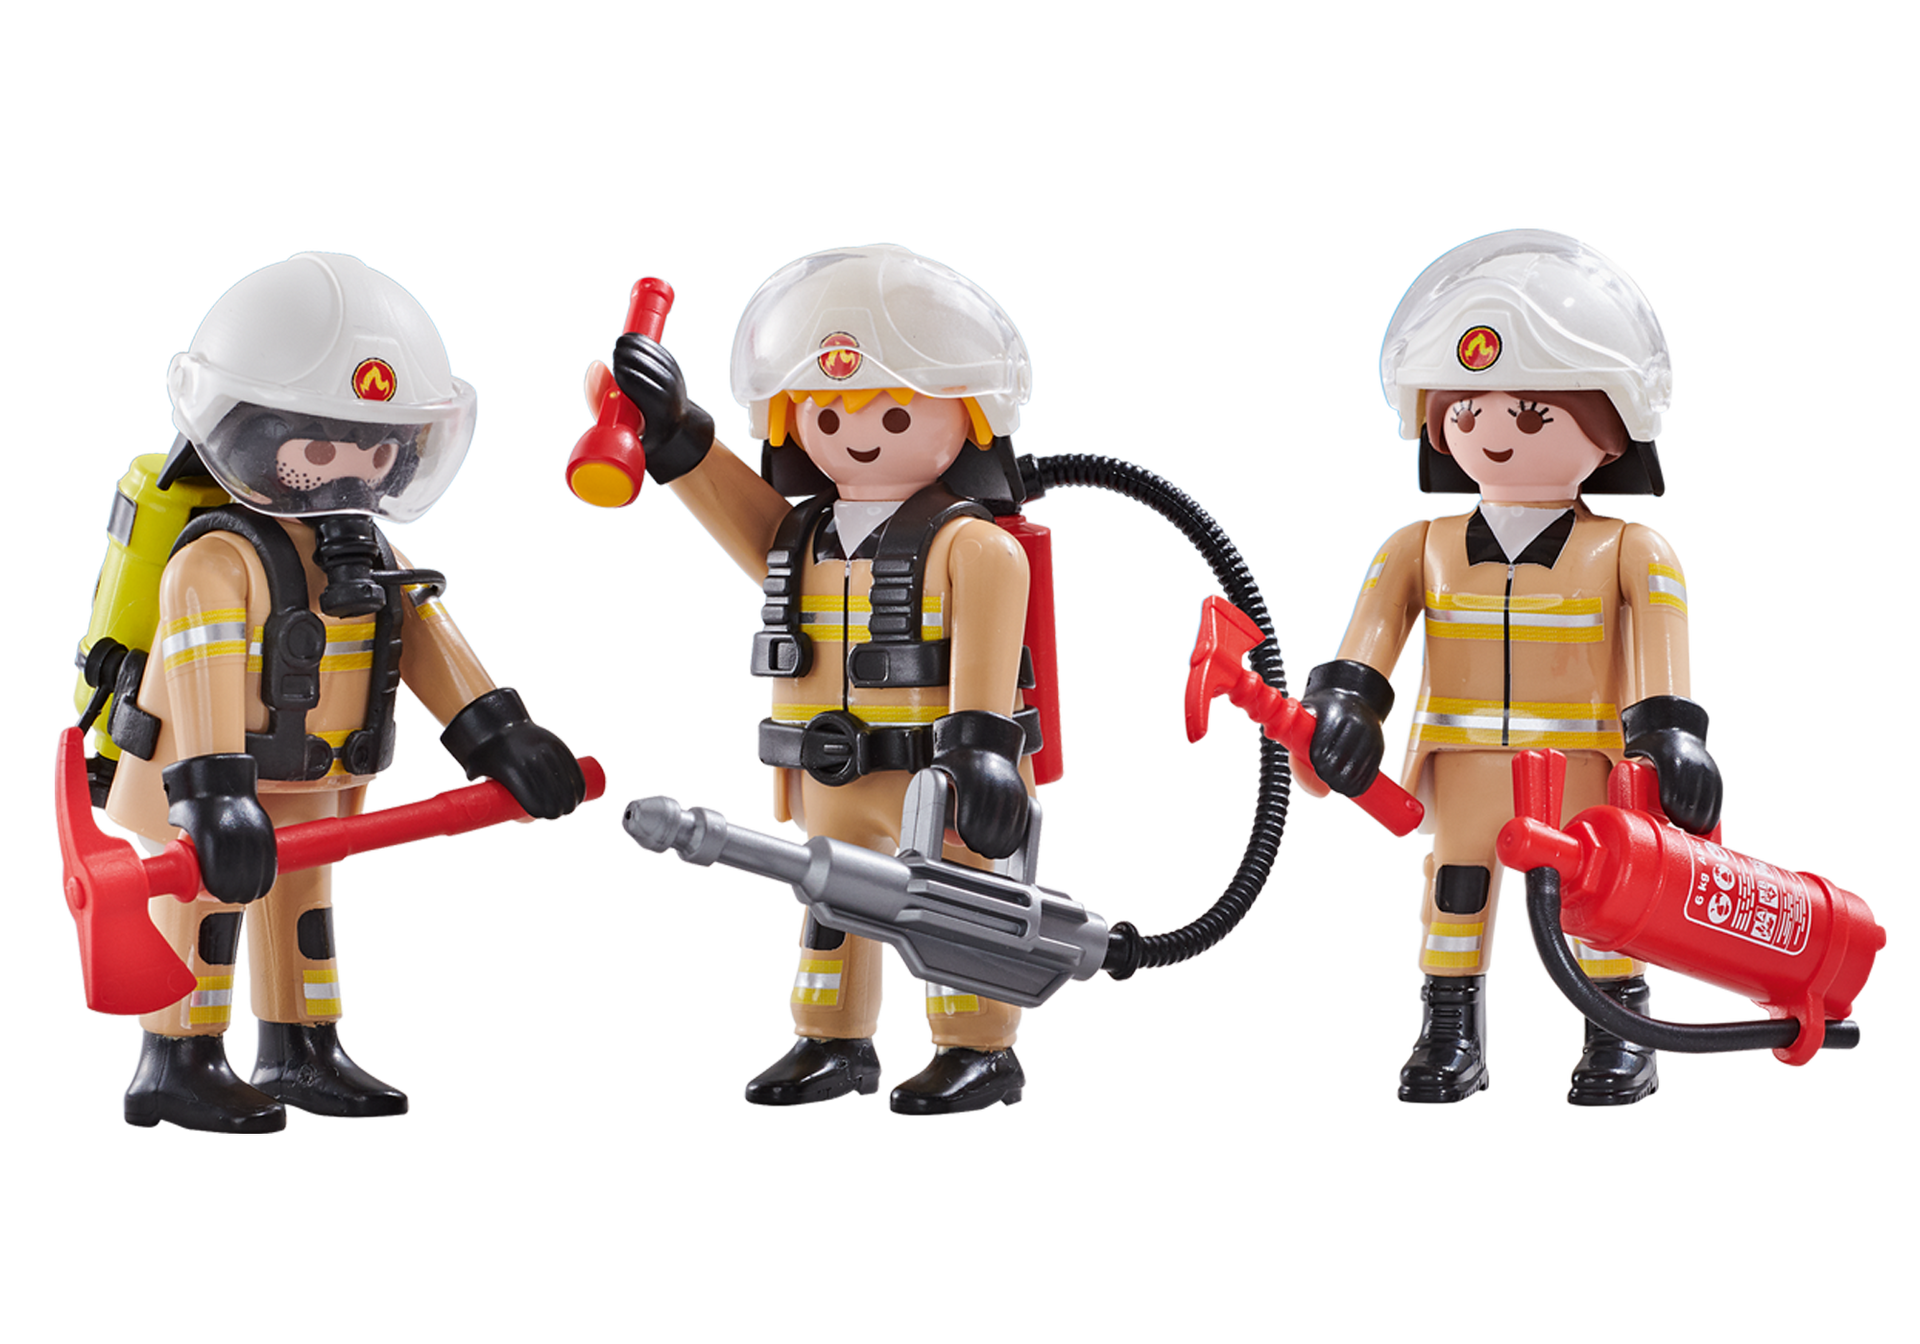 Playmobil Special 4608 Feuerwehrmann mit Zubehör und Megafon Ergänzung 